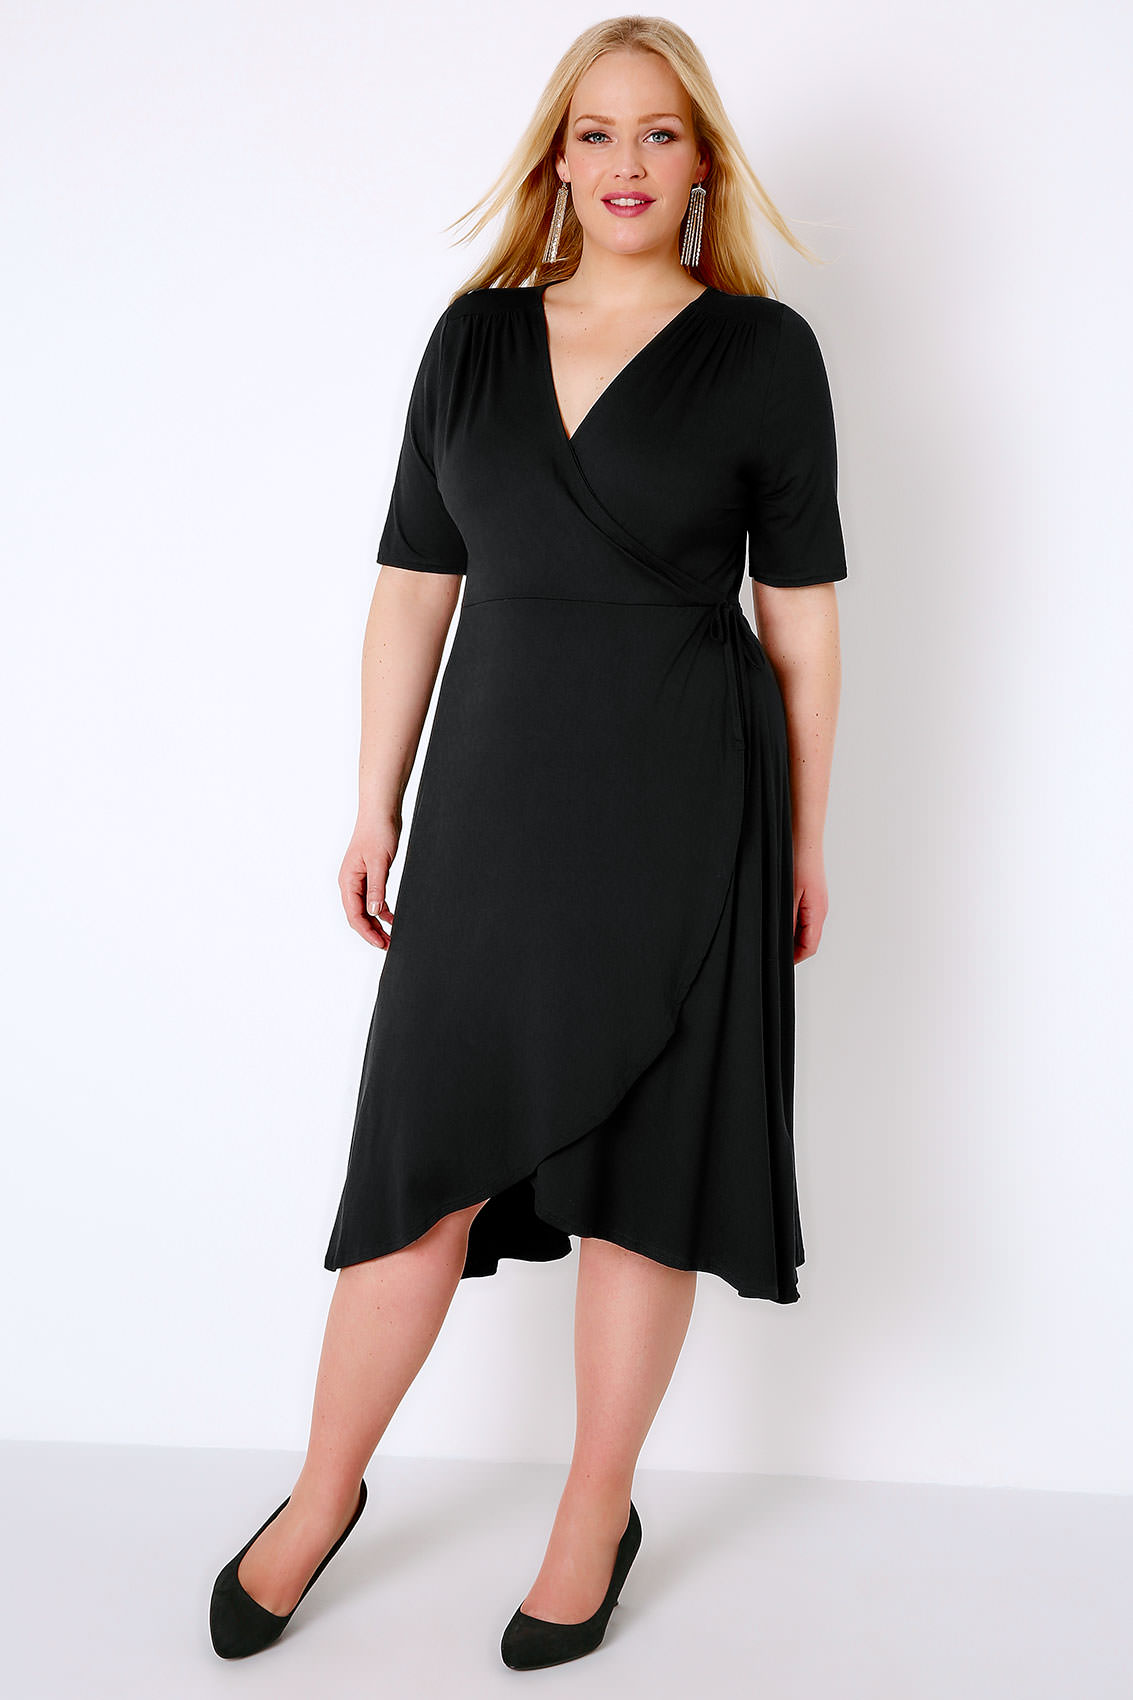 Size Plus wrap dresses sleeves pictures 2019, Plus Size Print Dresses ...